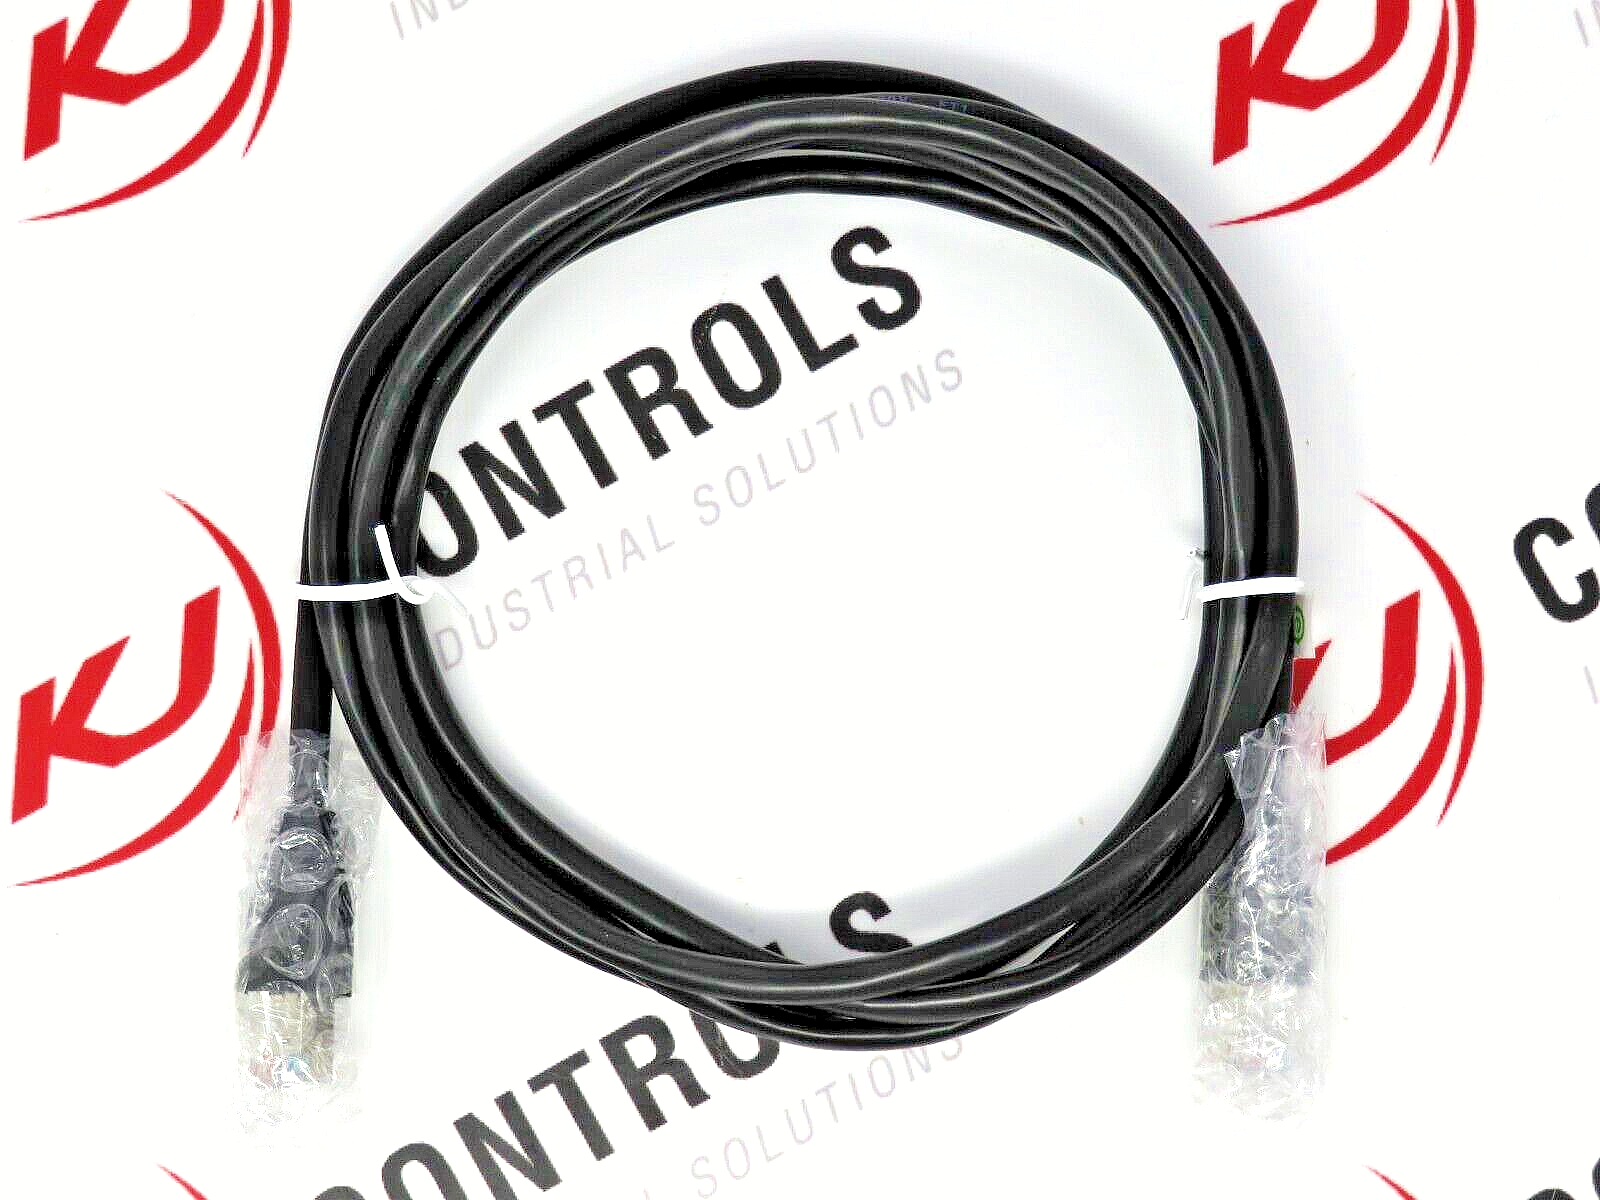 Allen-Bradley 22-RJ45CBL-C20 (DSI) Display Serial Interface Cable RJ45 M/M